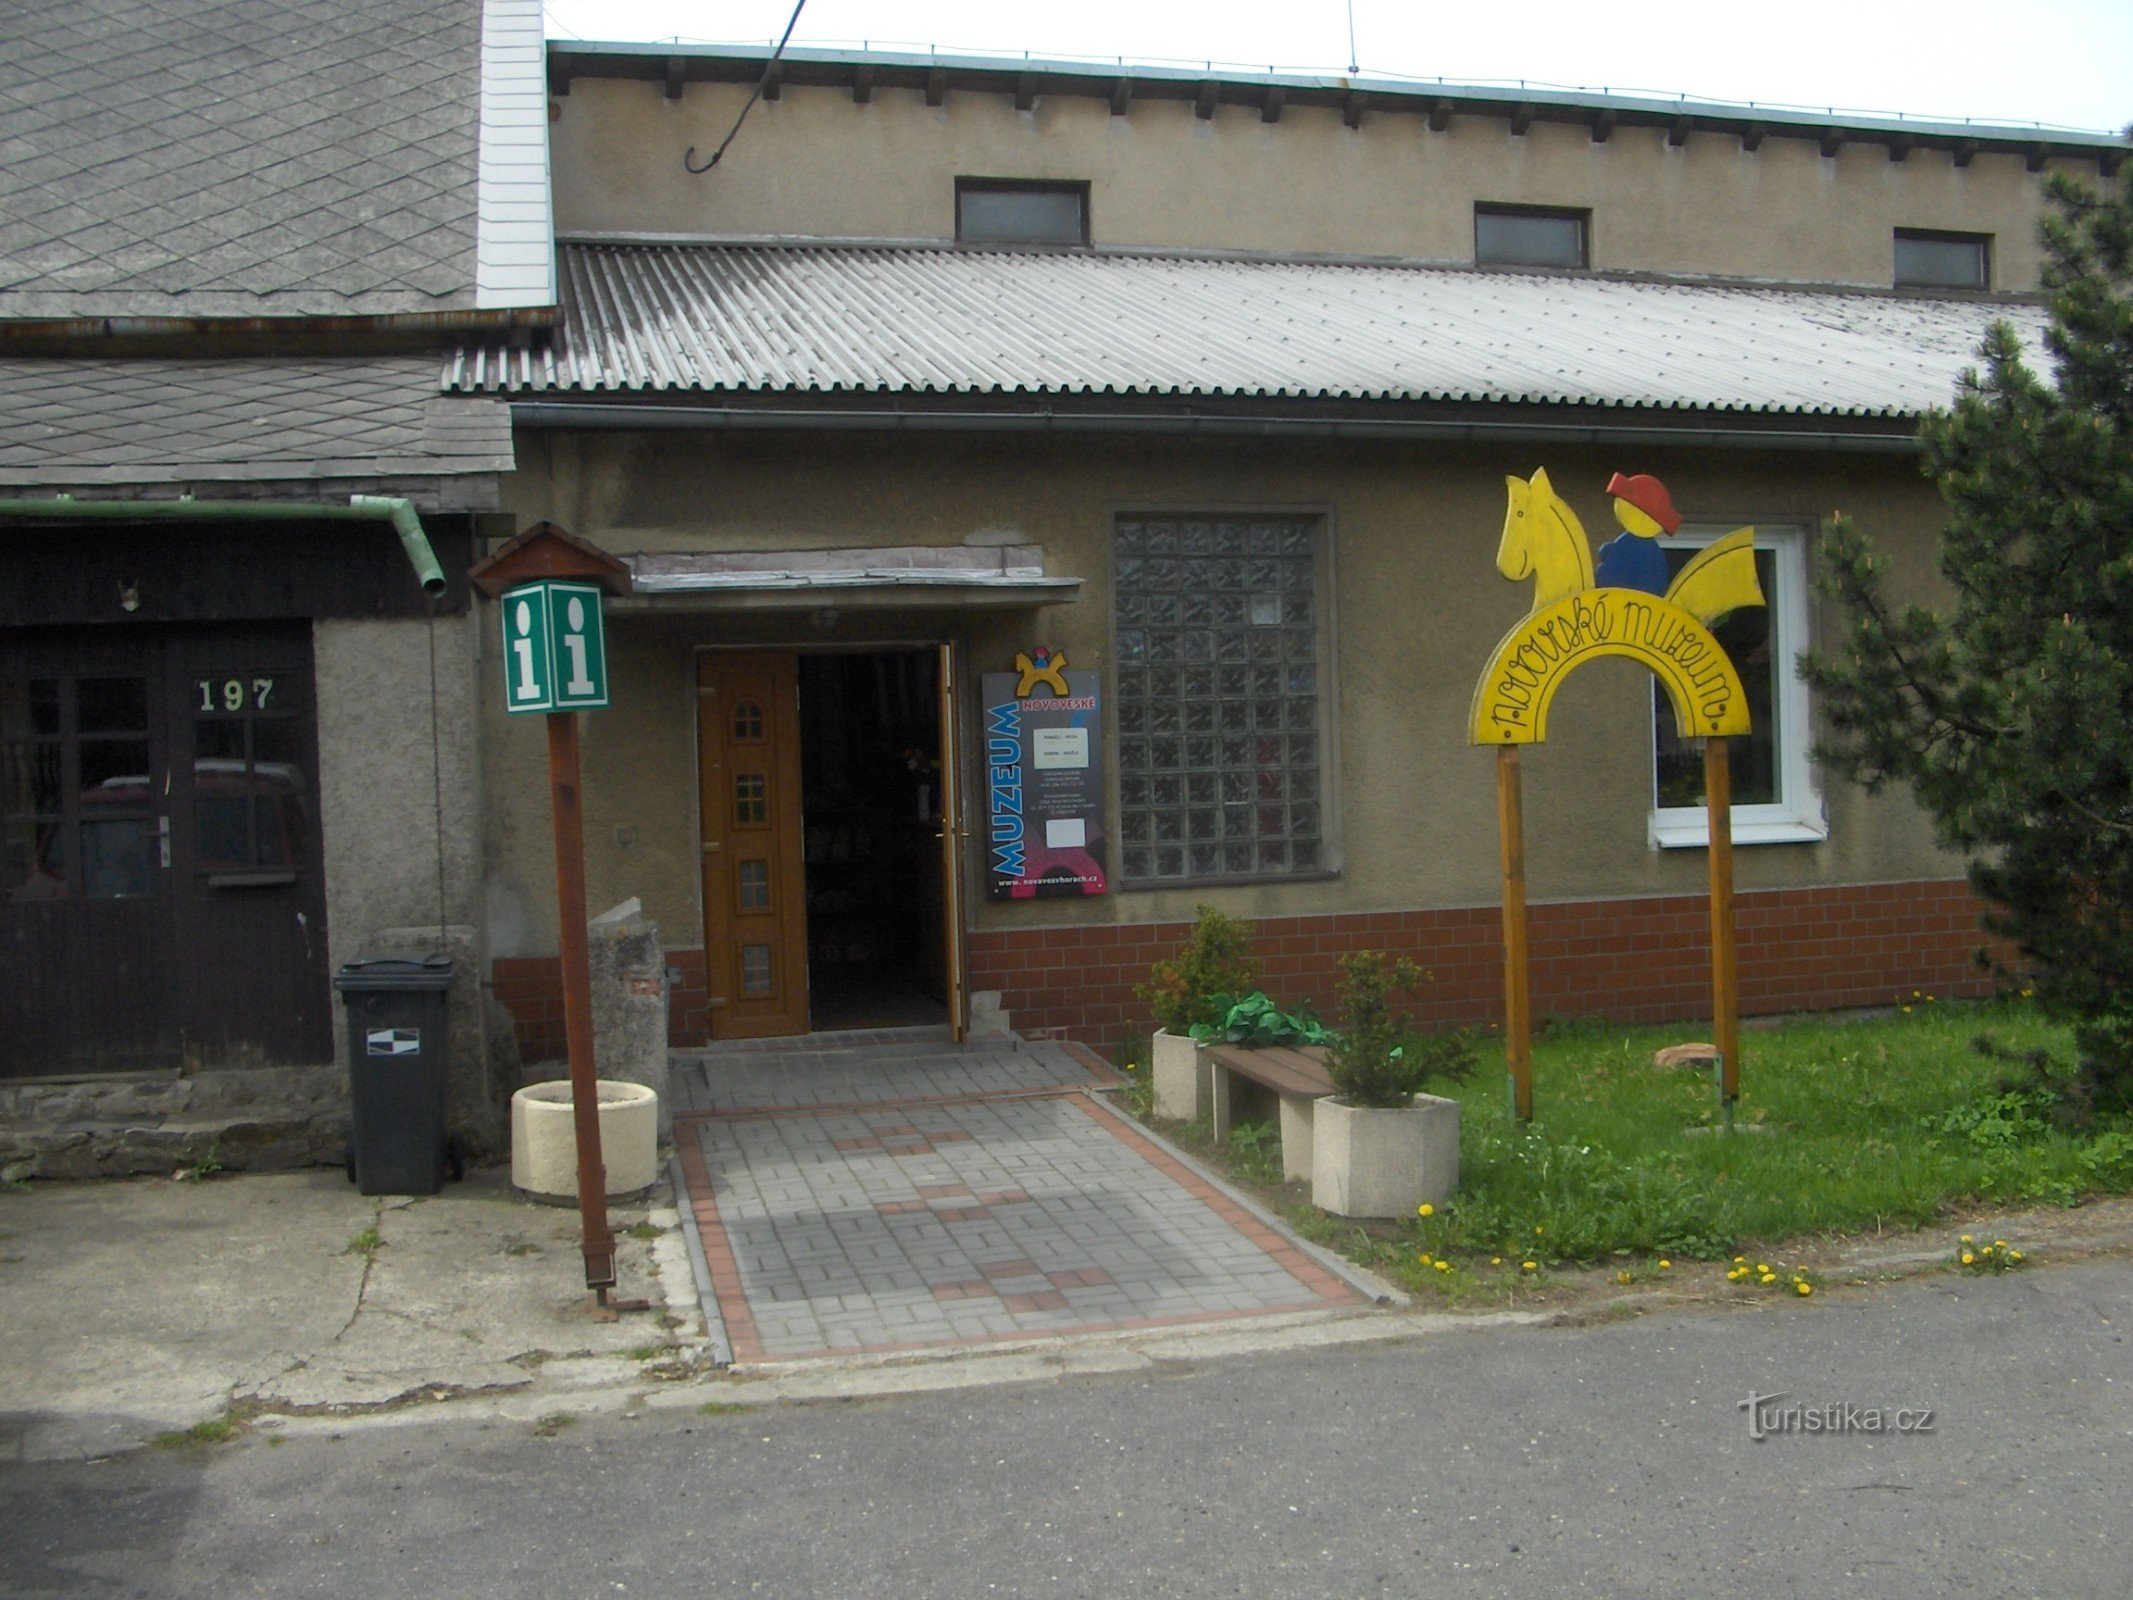 Μουσείο Novovesk.